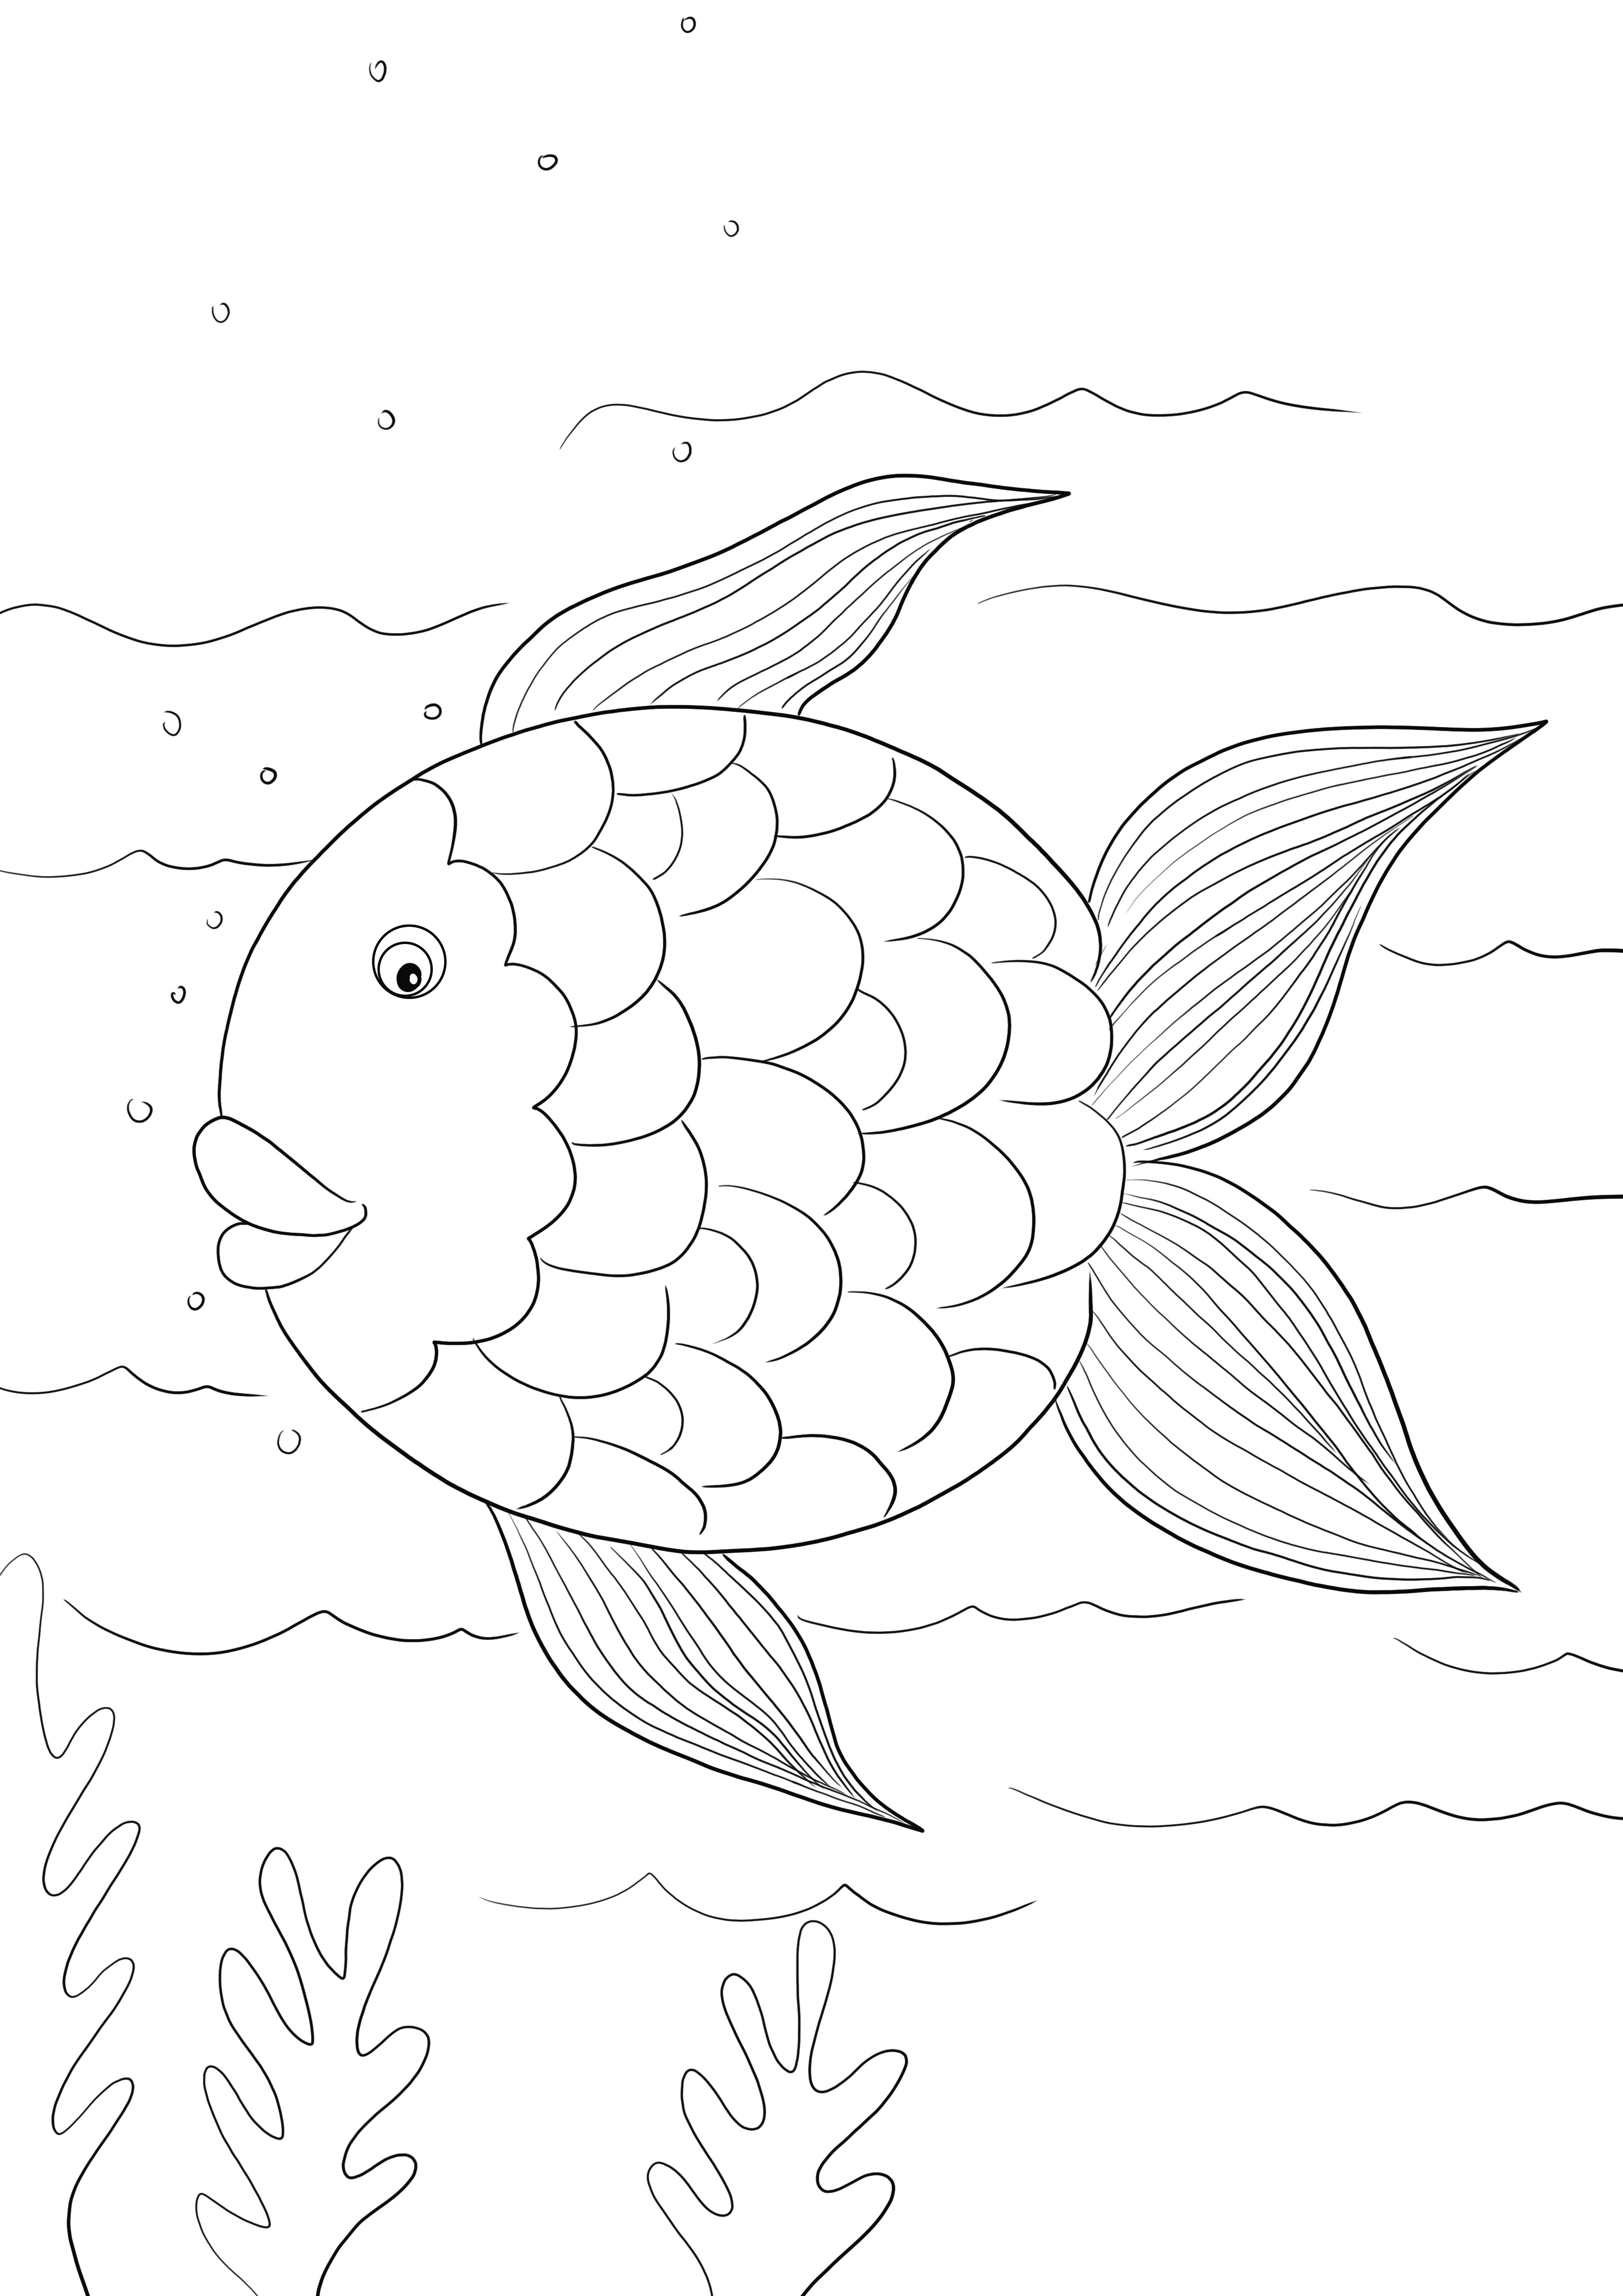 Șablon de pește curcubeu gratuit pentru imprimare sau descărcare și folosit pentru a colora pentru copii